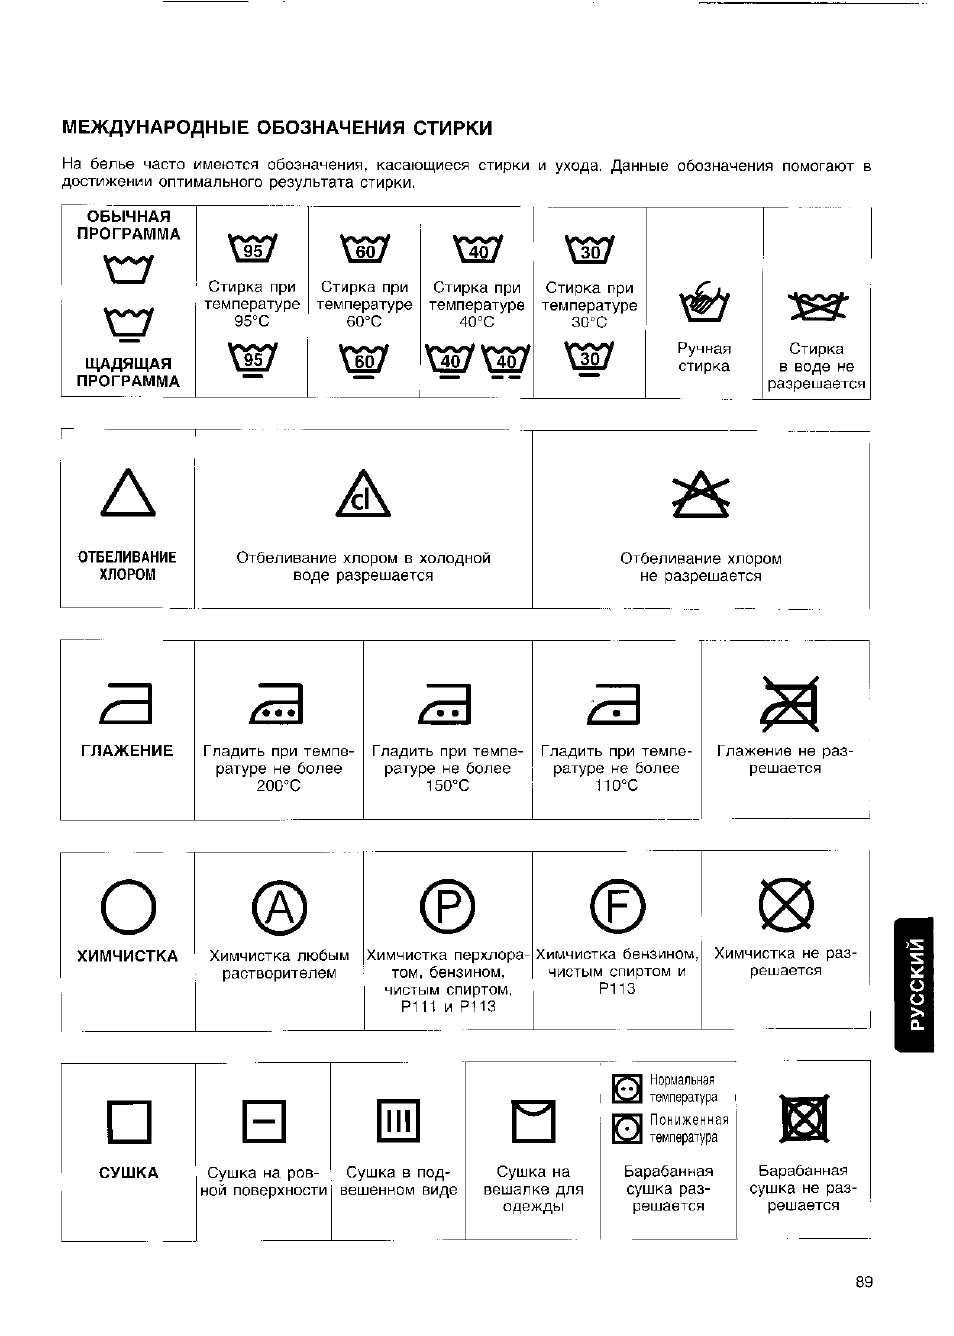 Значки на одежде для стирки: расшифровка обозначений на ярлыках, таблица с символами